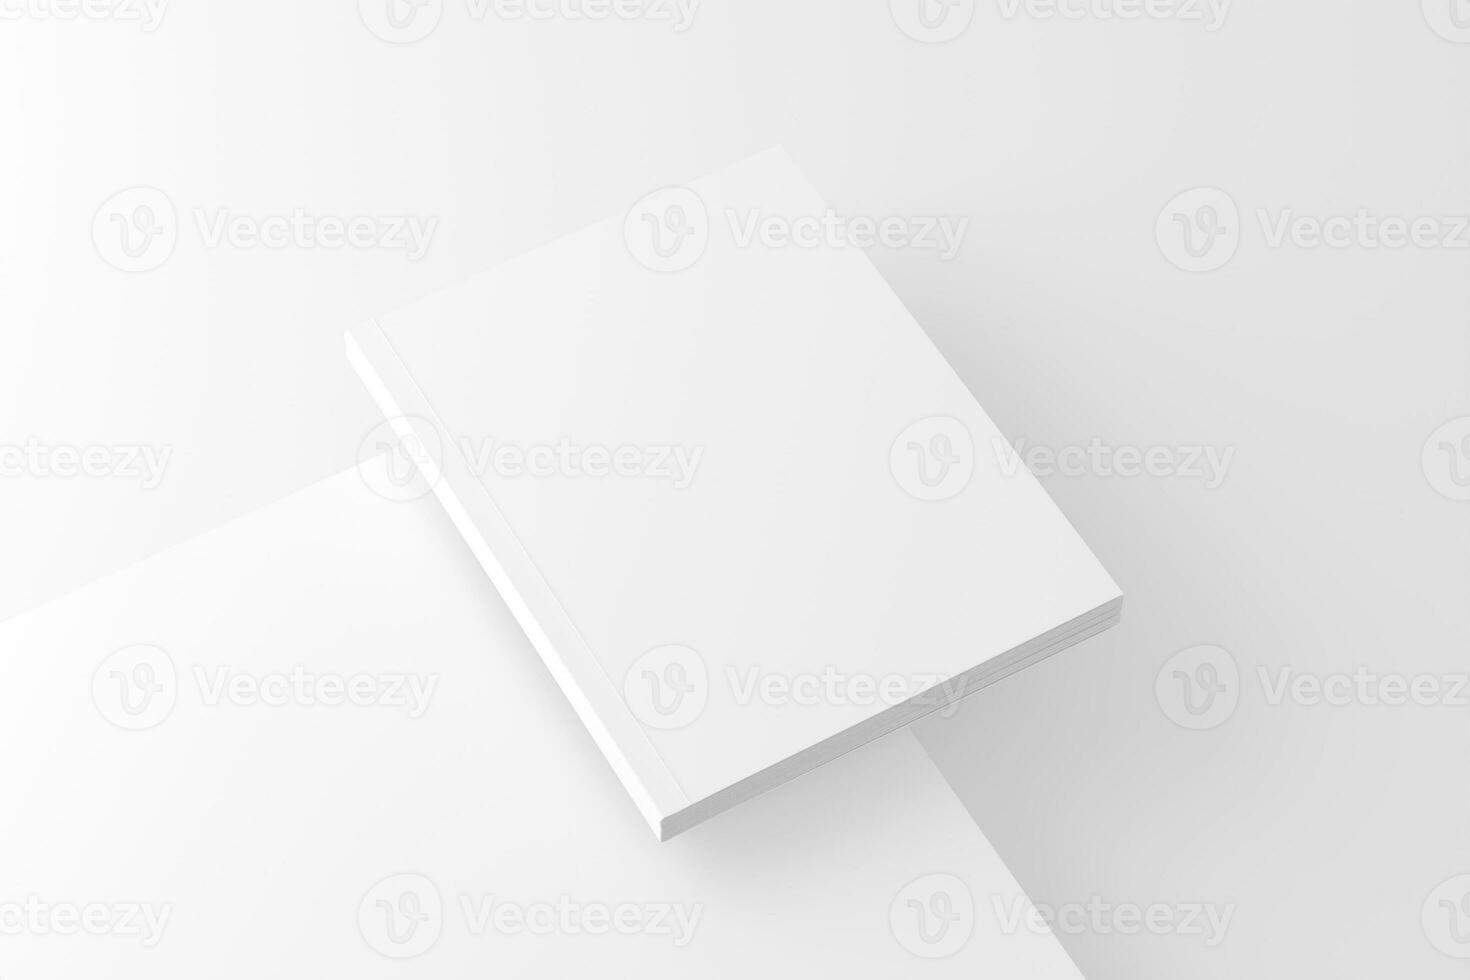 oss brev mjukt täcke bok omslag vit tom attrapp foto